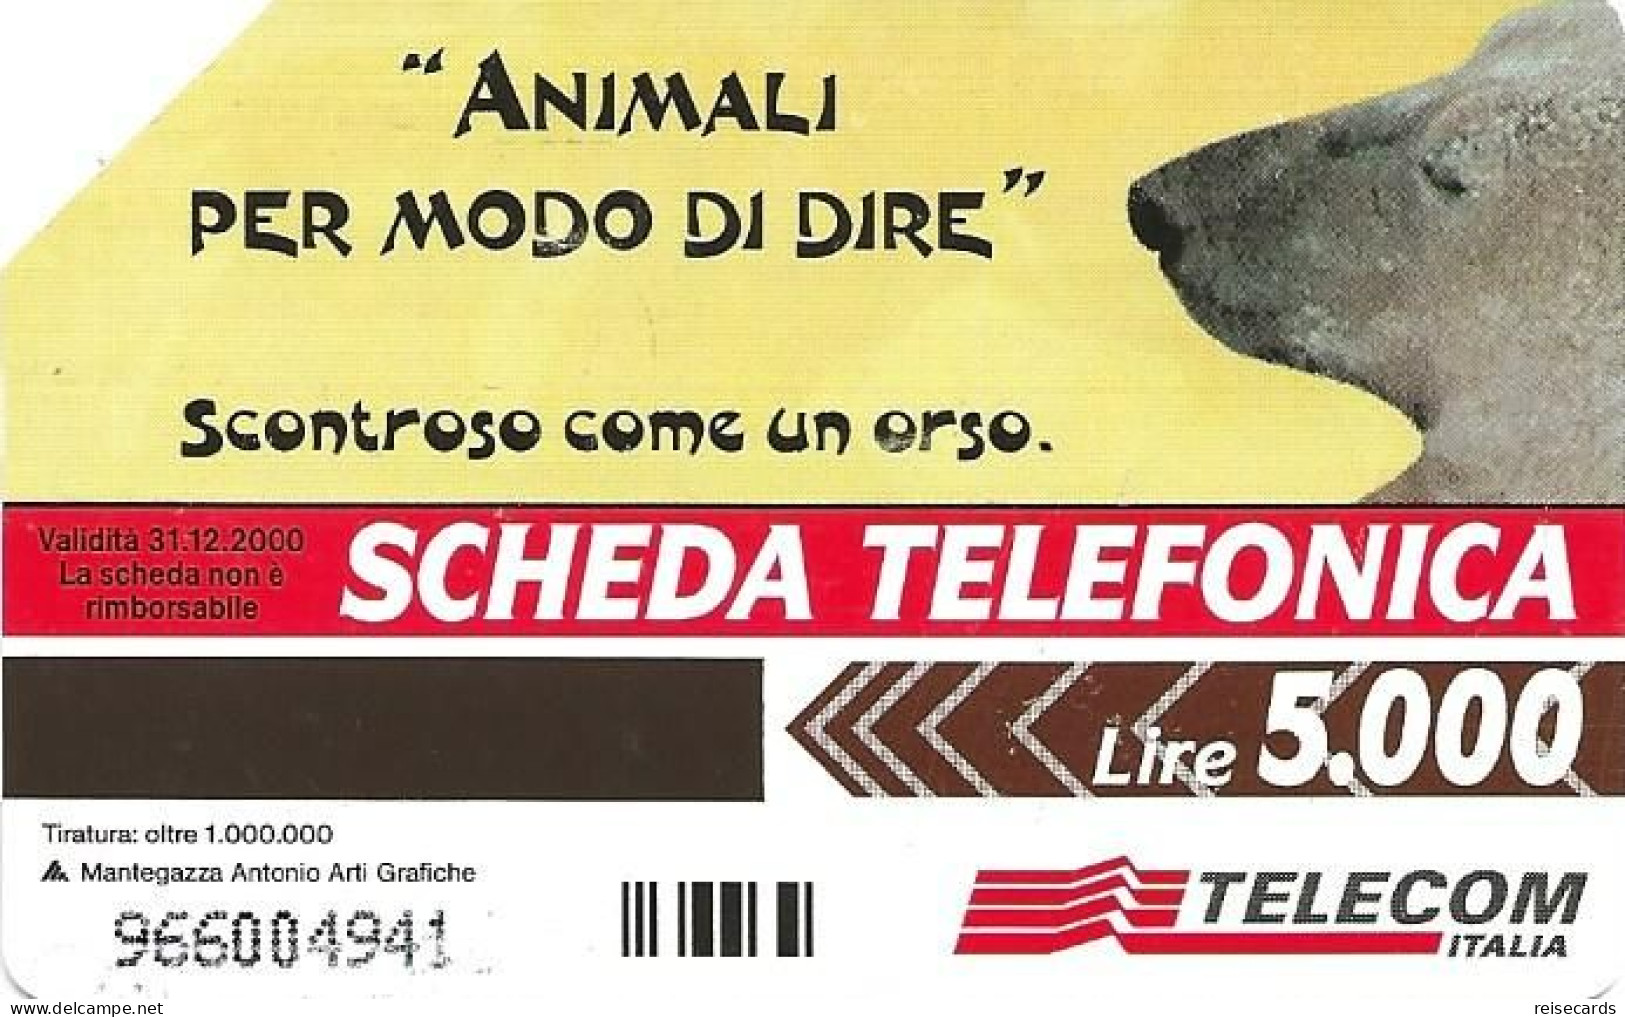 Italy: Telecom Italia - Animali Per Modo Di Dire, Orso - Public Advertising